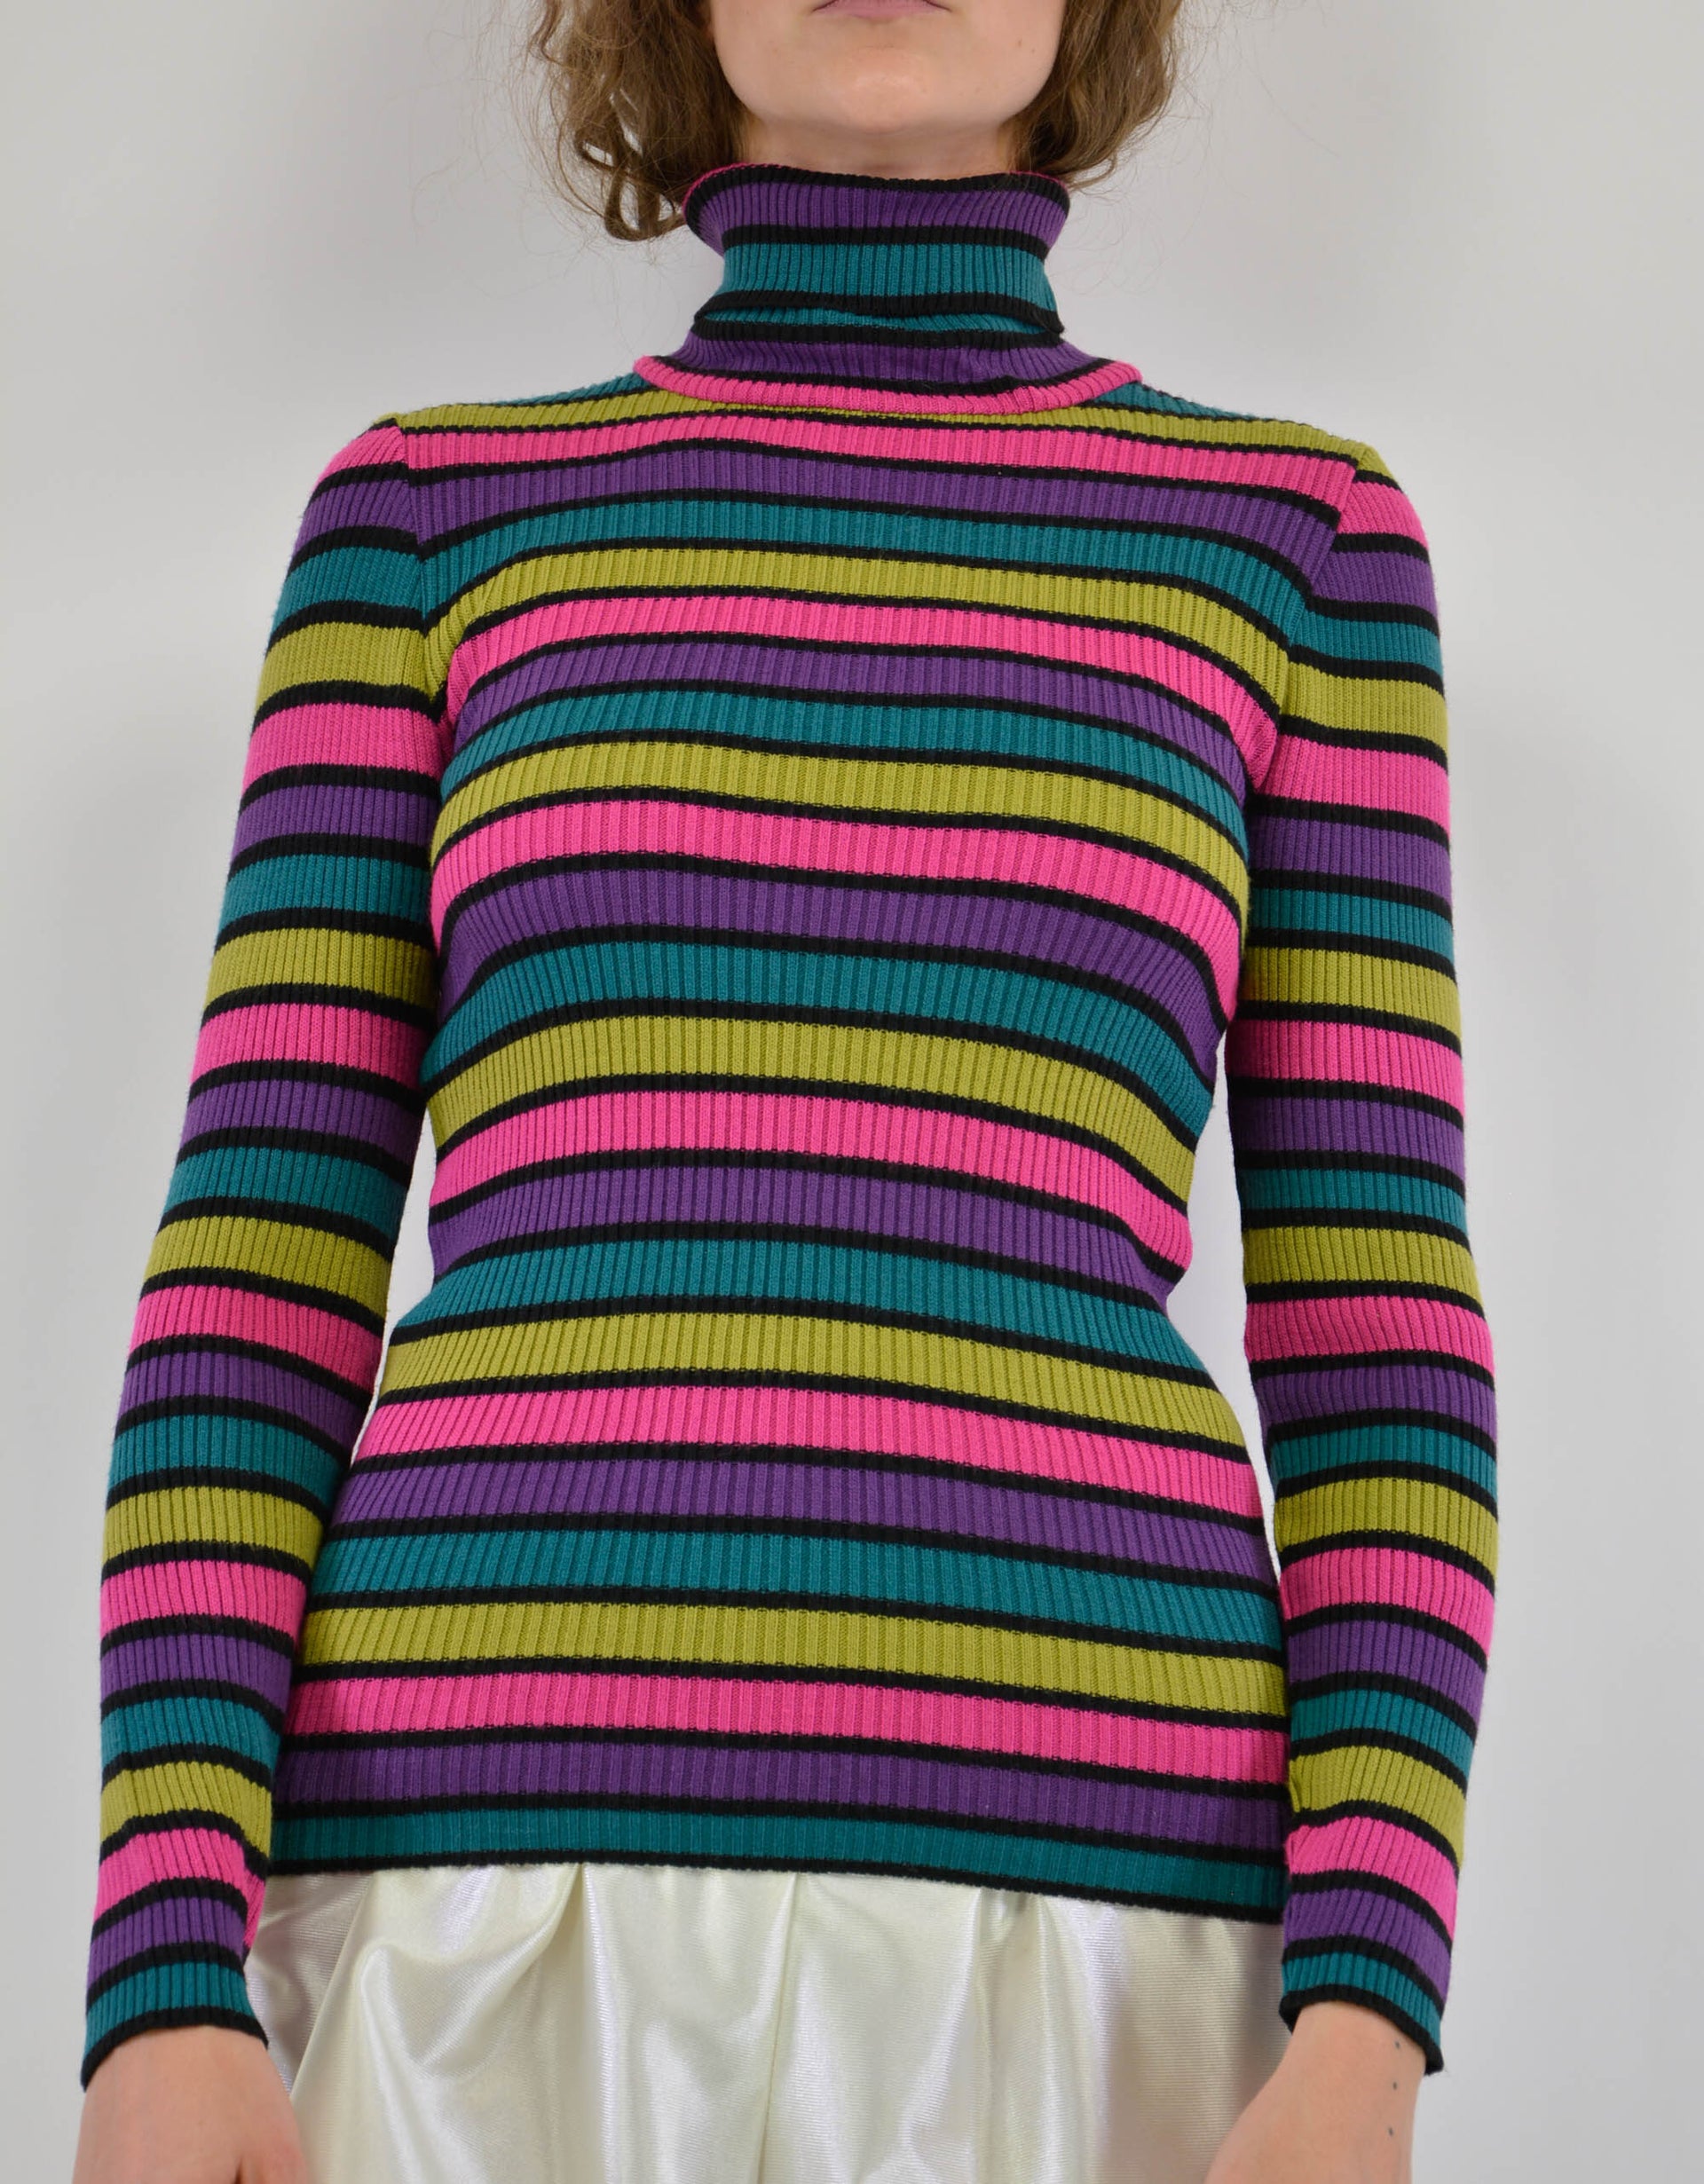 80s knitwear - PICKNWEIGHT - VINTAGE KILO STORE